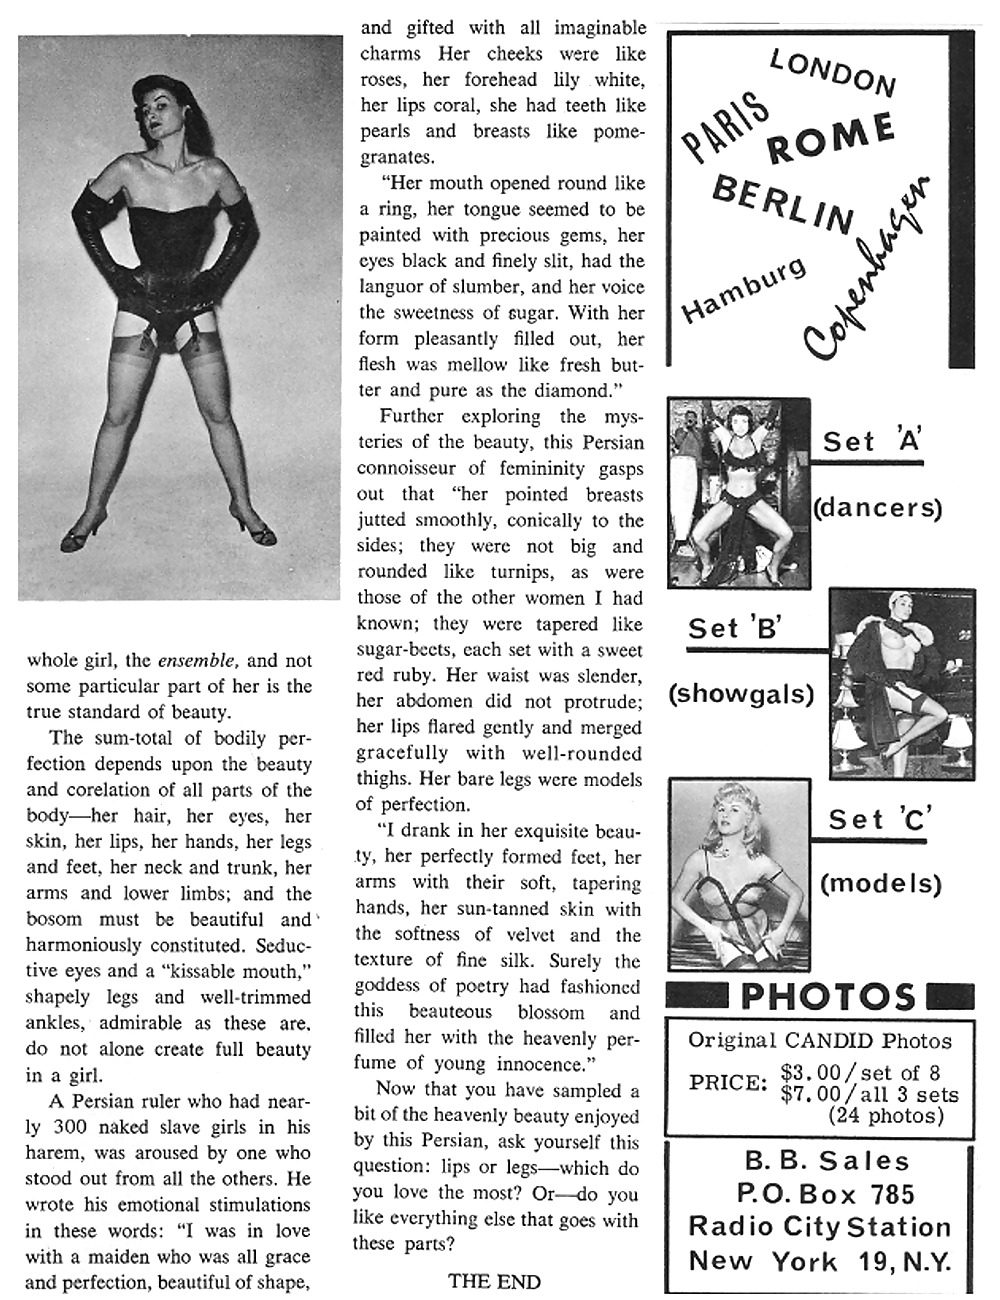 ヴィンテージ雑誌 leg show vol 01 no 06 - 1963
 #2919406